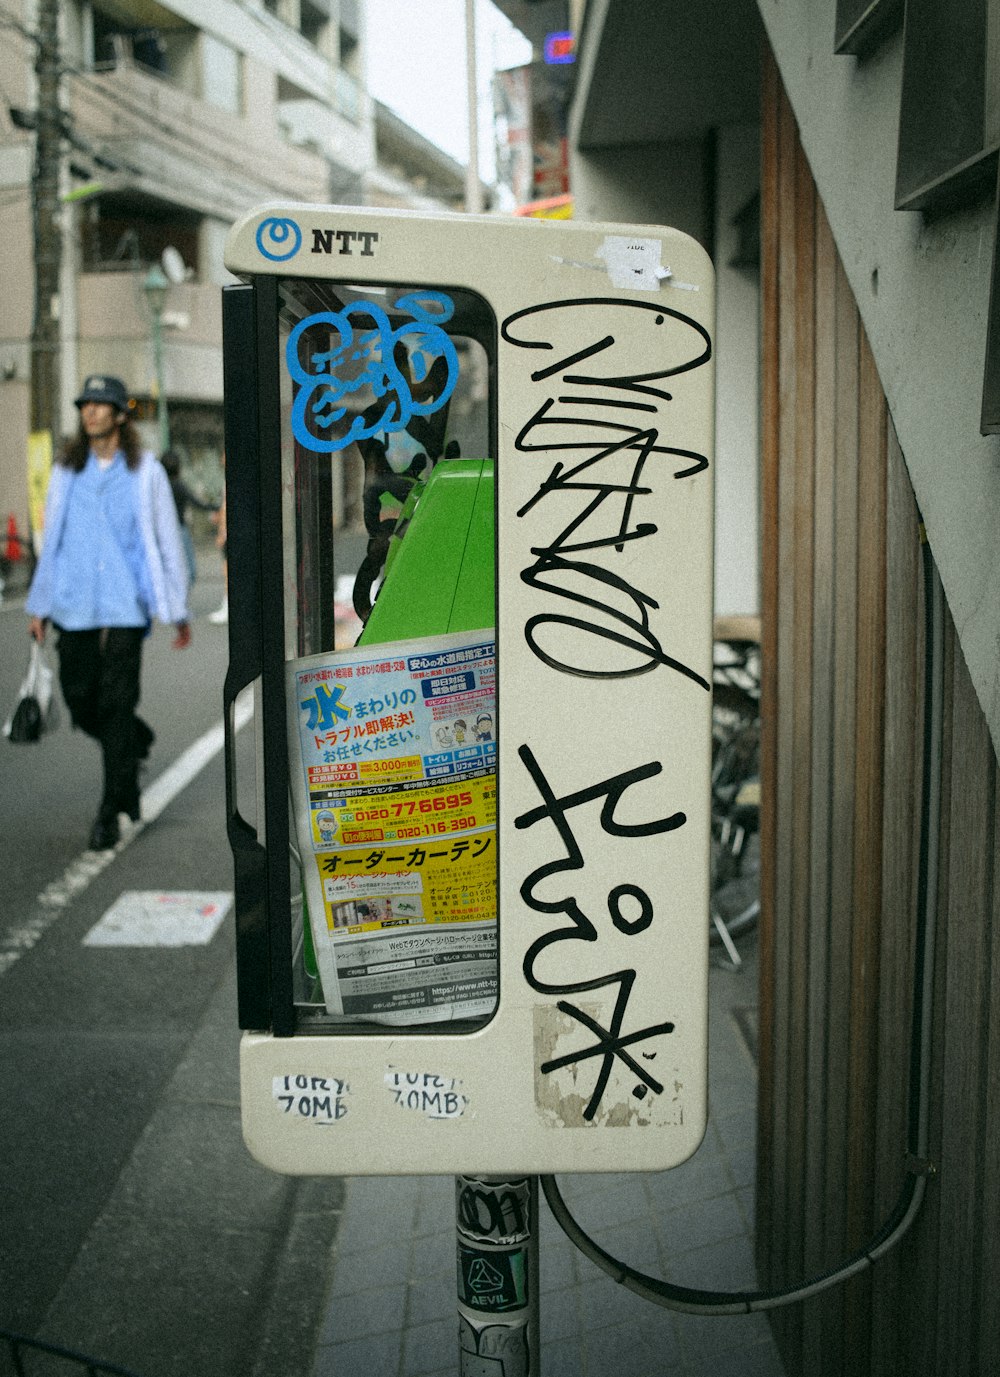 Un letrero de la calle que ha sido vandalizado con grafitis